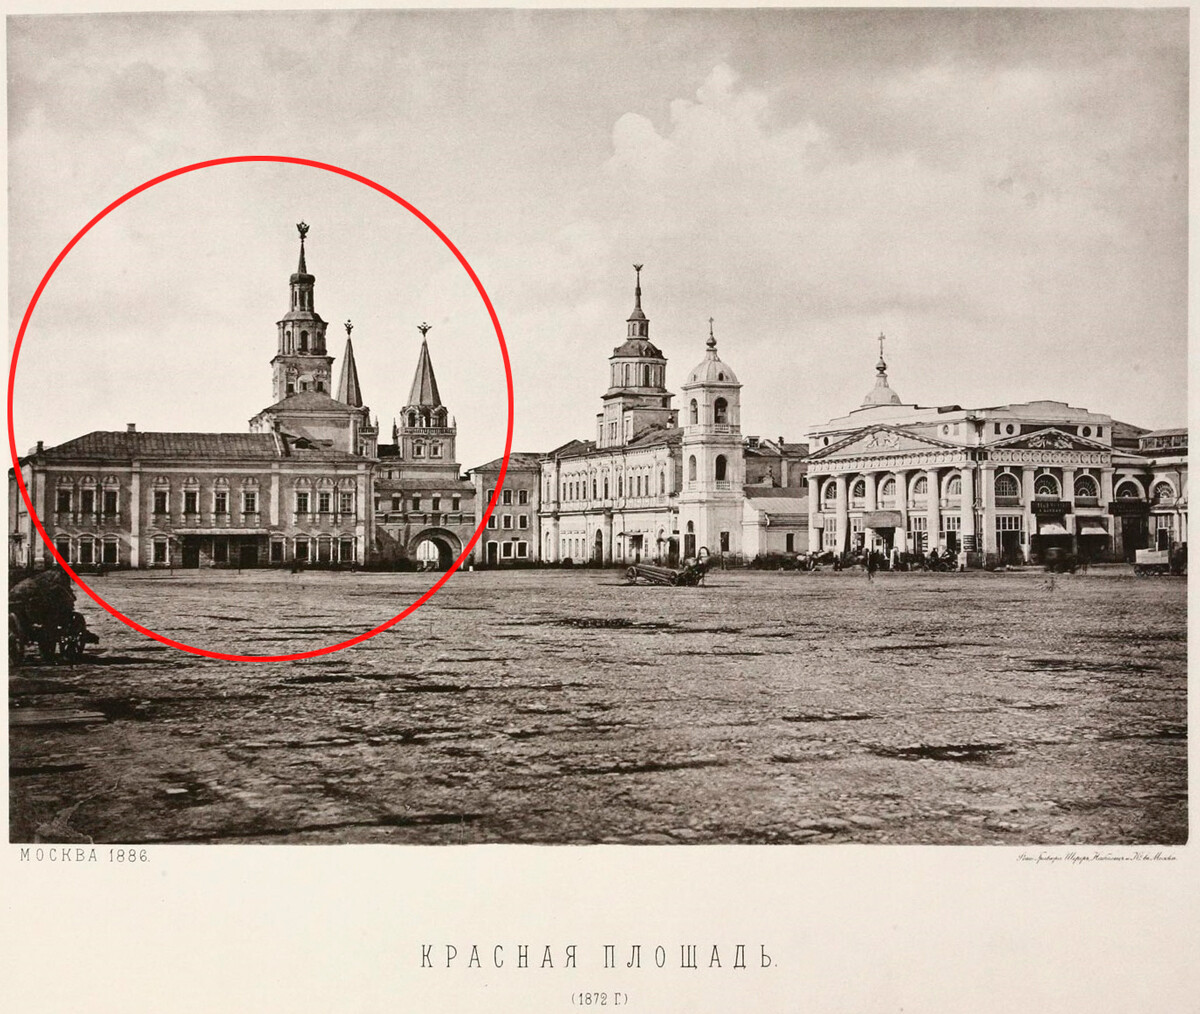 Das Gebäude des des Semskij Prikases auf dem Roten Platz, 1872.
